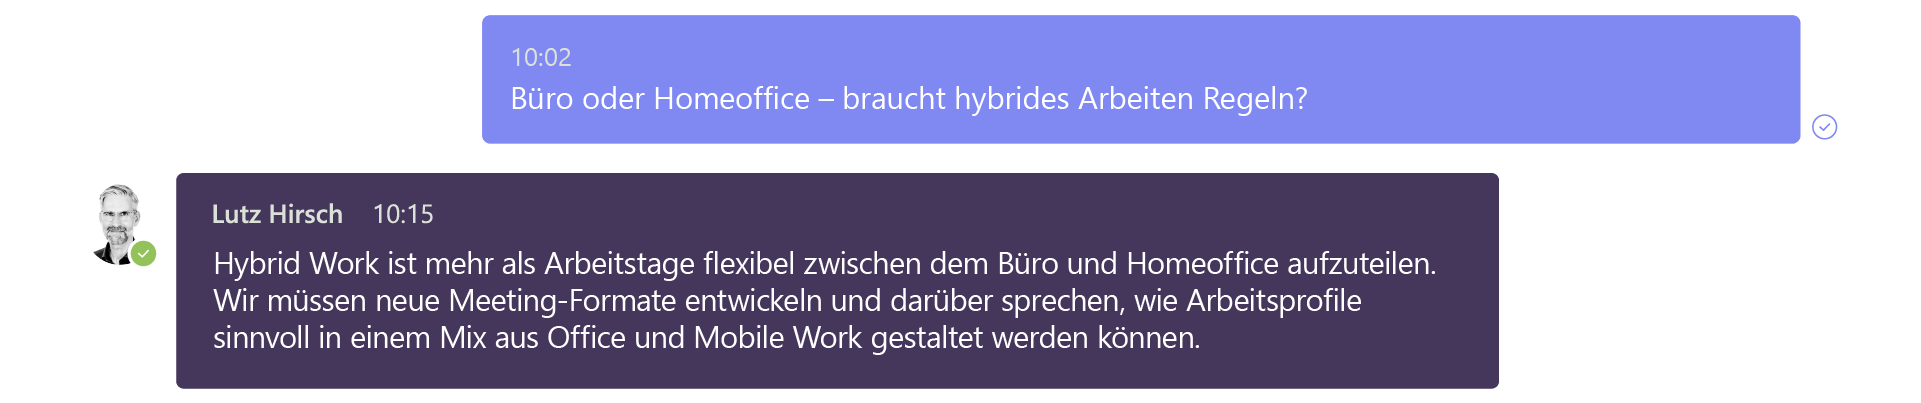 Frage Microsoft: Büro oder Homeoffice – braucht hybrides Arbeiten Regeln? Antwort Lutz Hirsch: Hybrid Work ist mehr als Arbeitstage flexibel zwischen dem Büro und dem Homeoffice aufzuteilen. Wir müssen neue Meeting-Formate entwickeln und darüber sprechen, wie Arbeitsprofile sinnvoll in einem Mix aus Office und Mobile Work gestaltet werden können. 